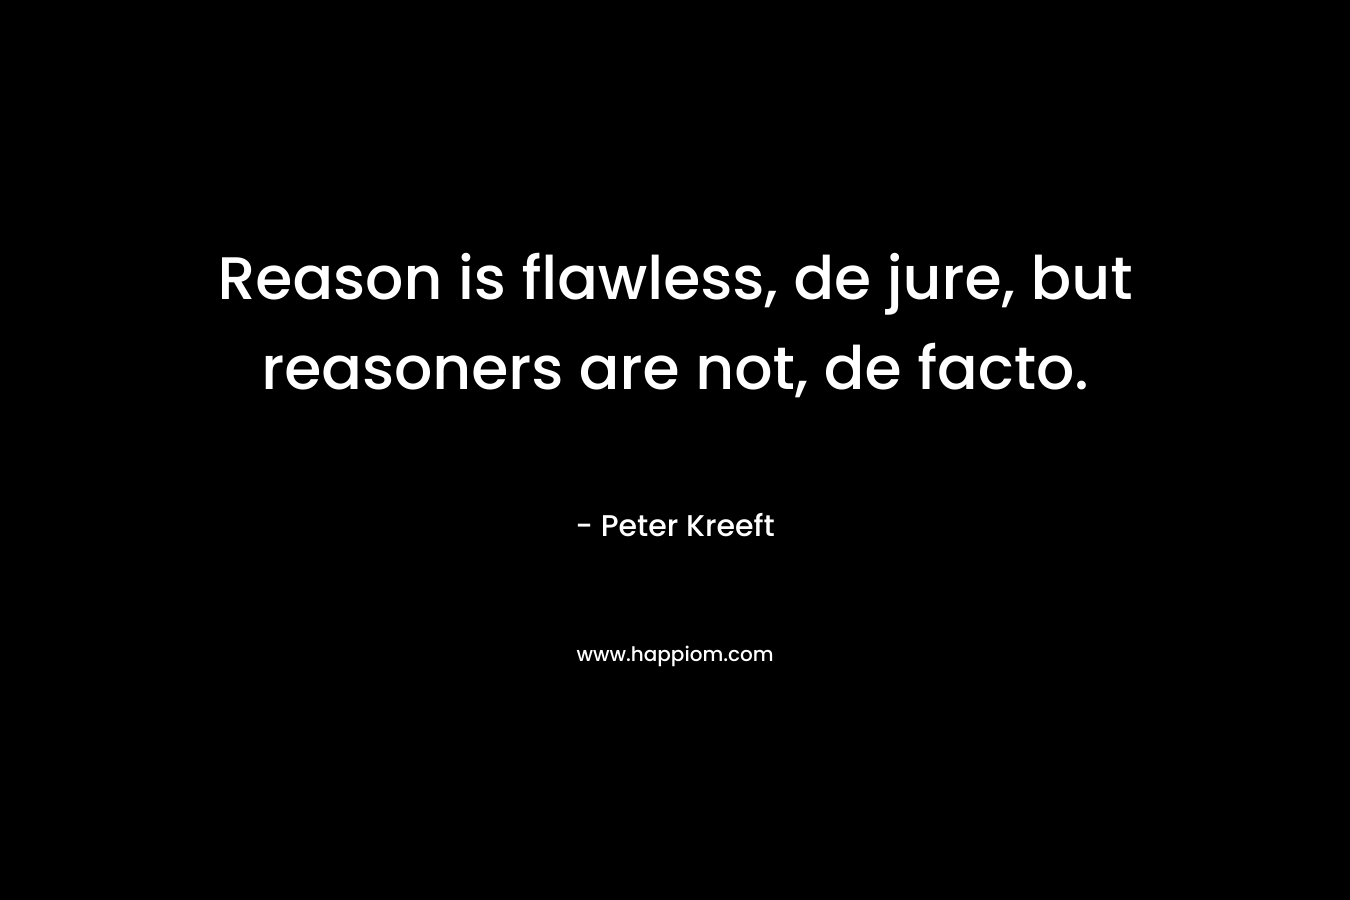 Reason is flawless, de jure, but reasoners are not, de facto.